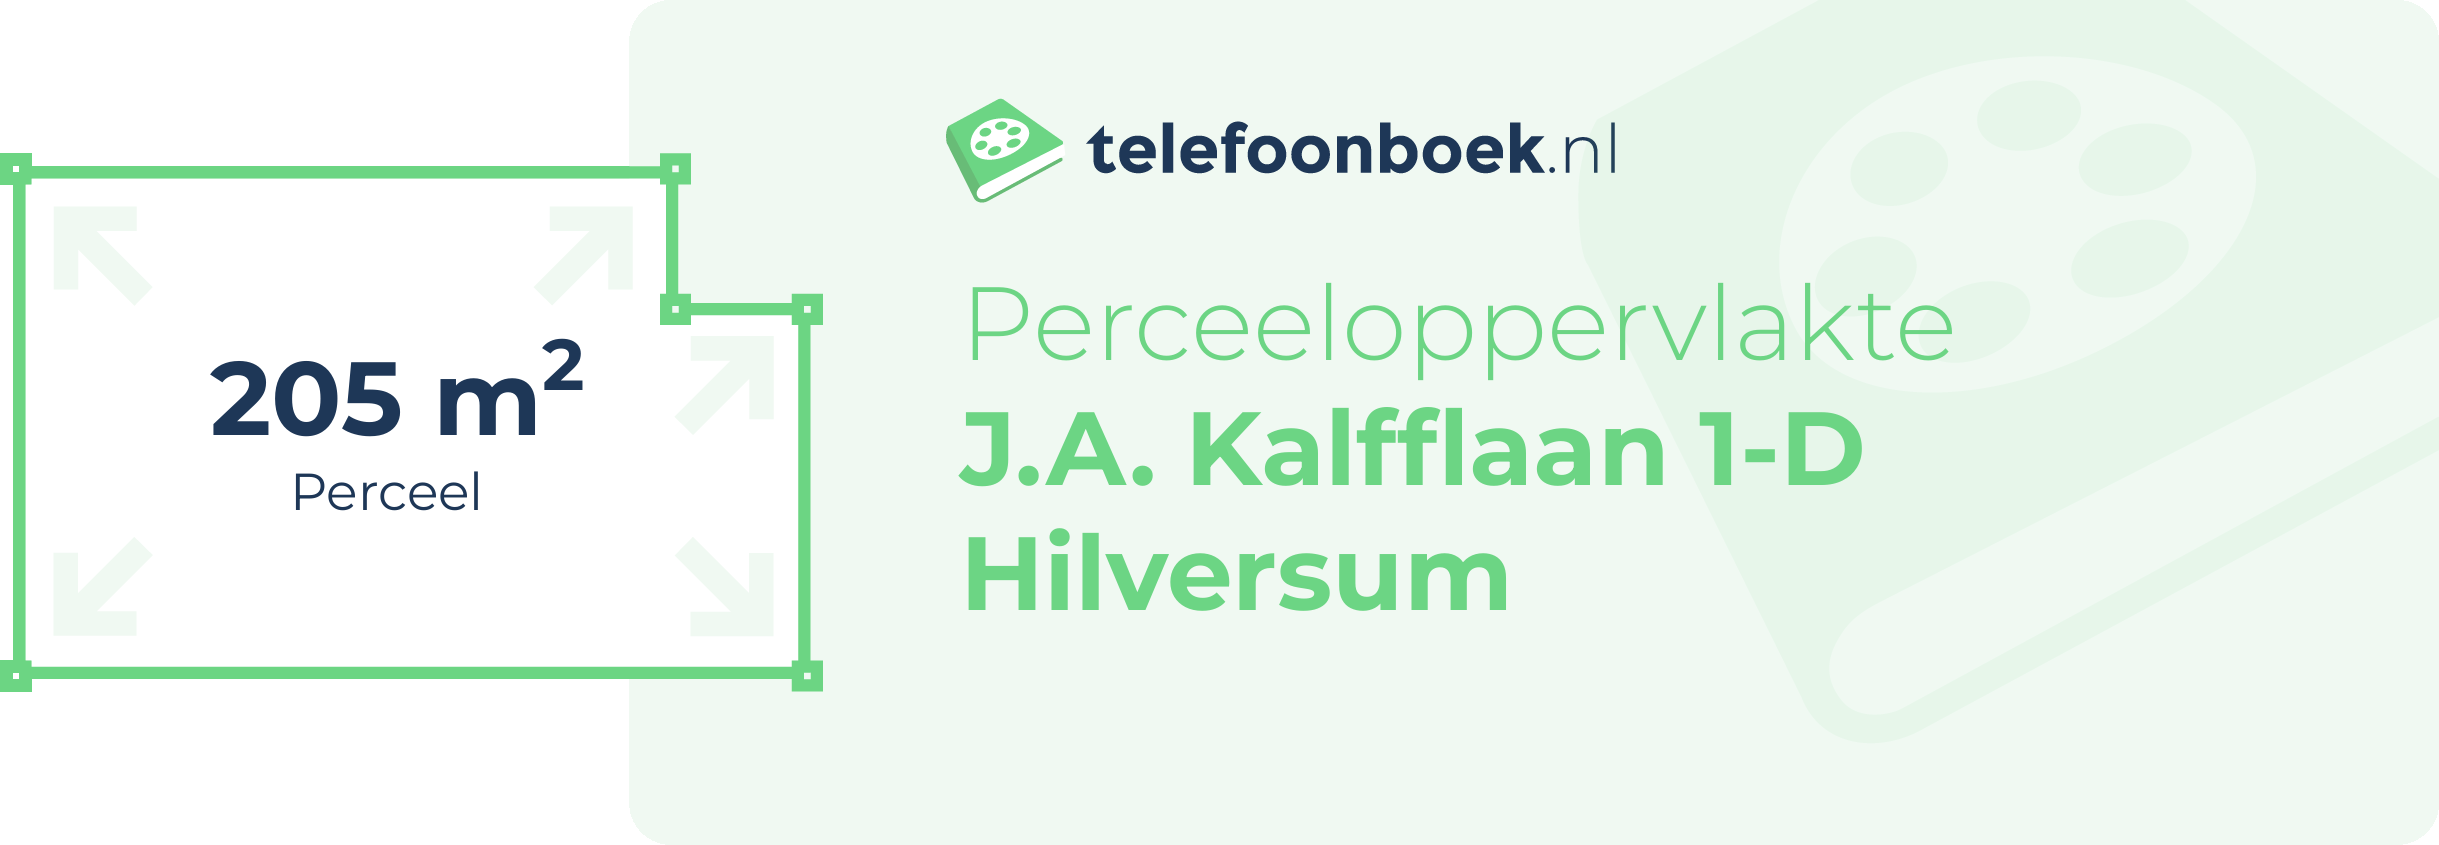 Perceeloppervlakte J.A. Kalfflaan 1-D Hilversum